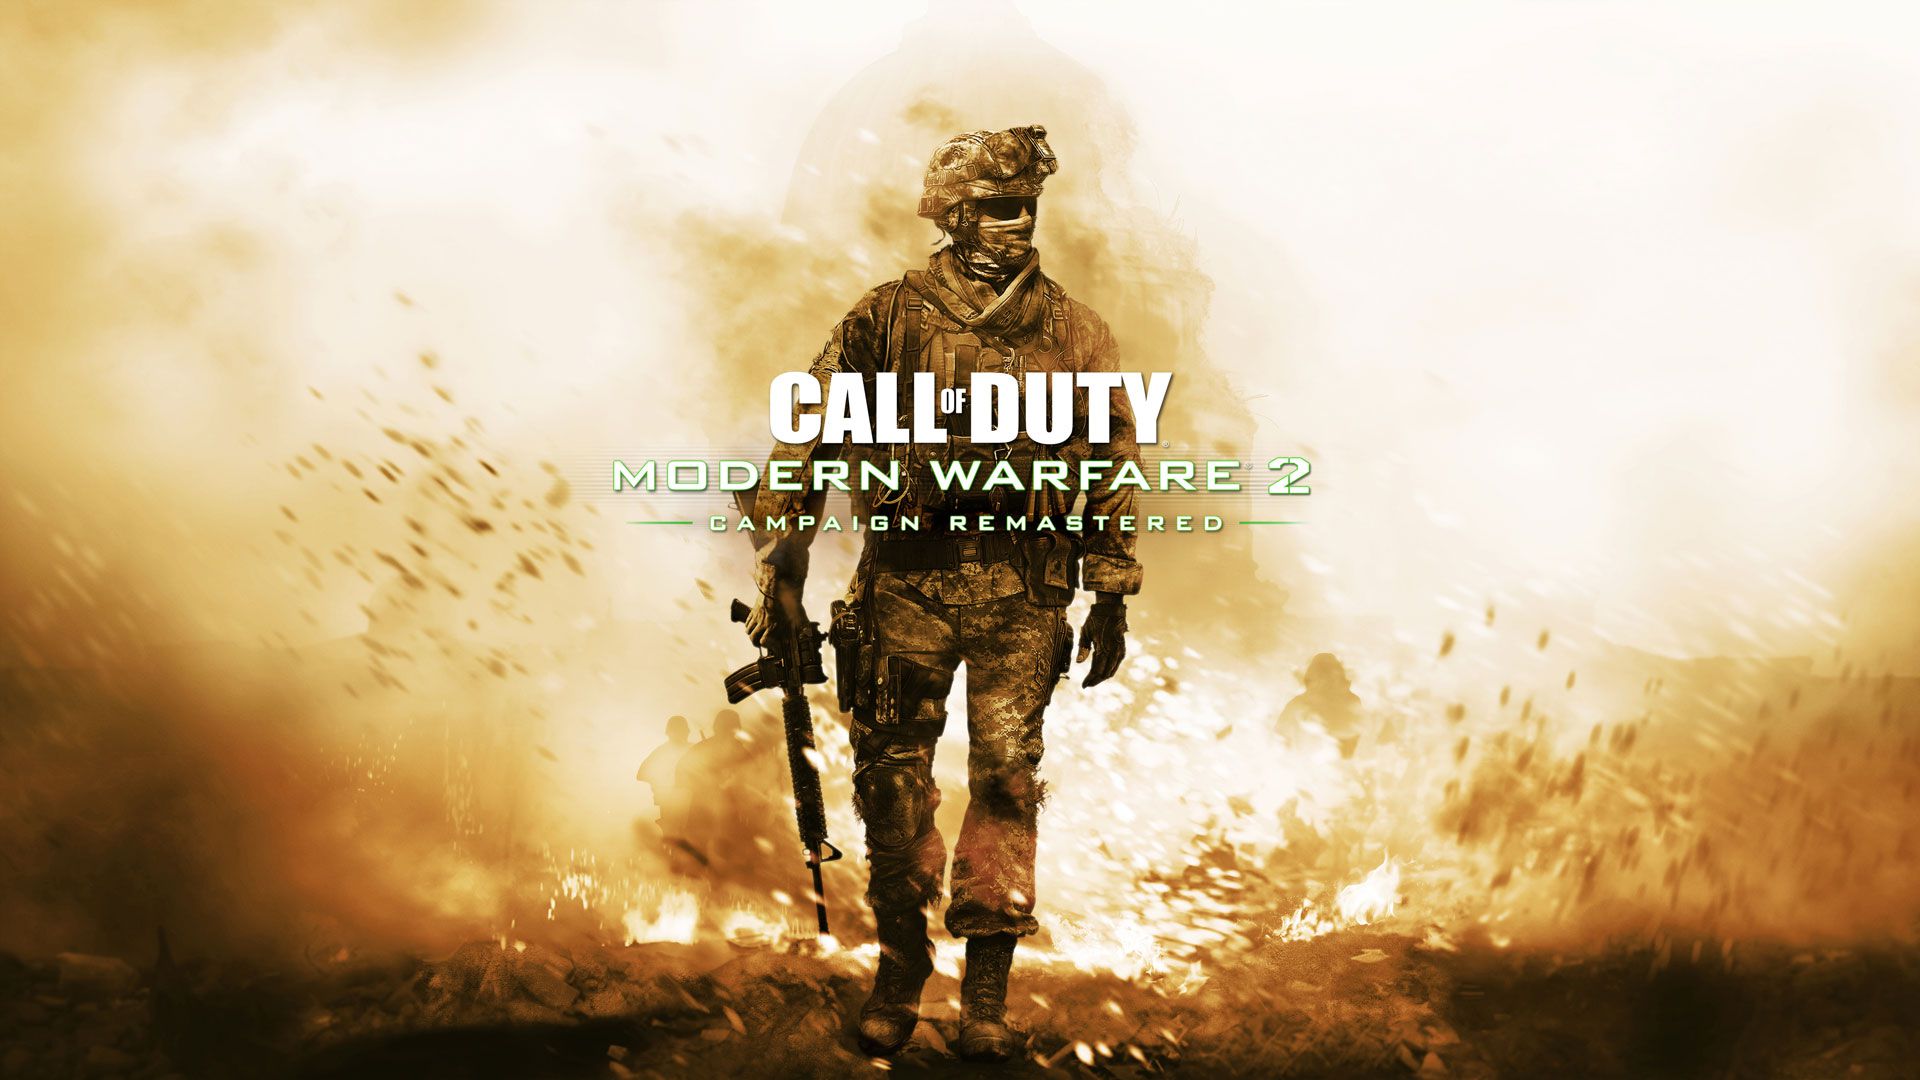 Campaña Remasterizada de Call of Duty: Modern Warfare 2 disponible para Playstation 4